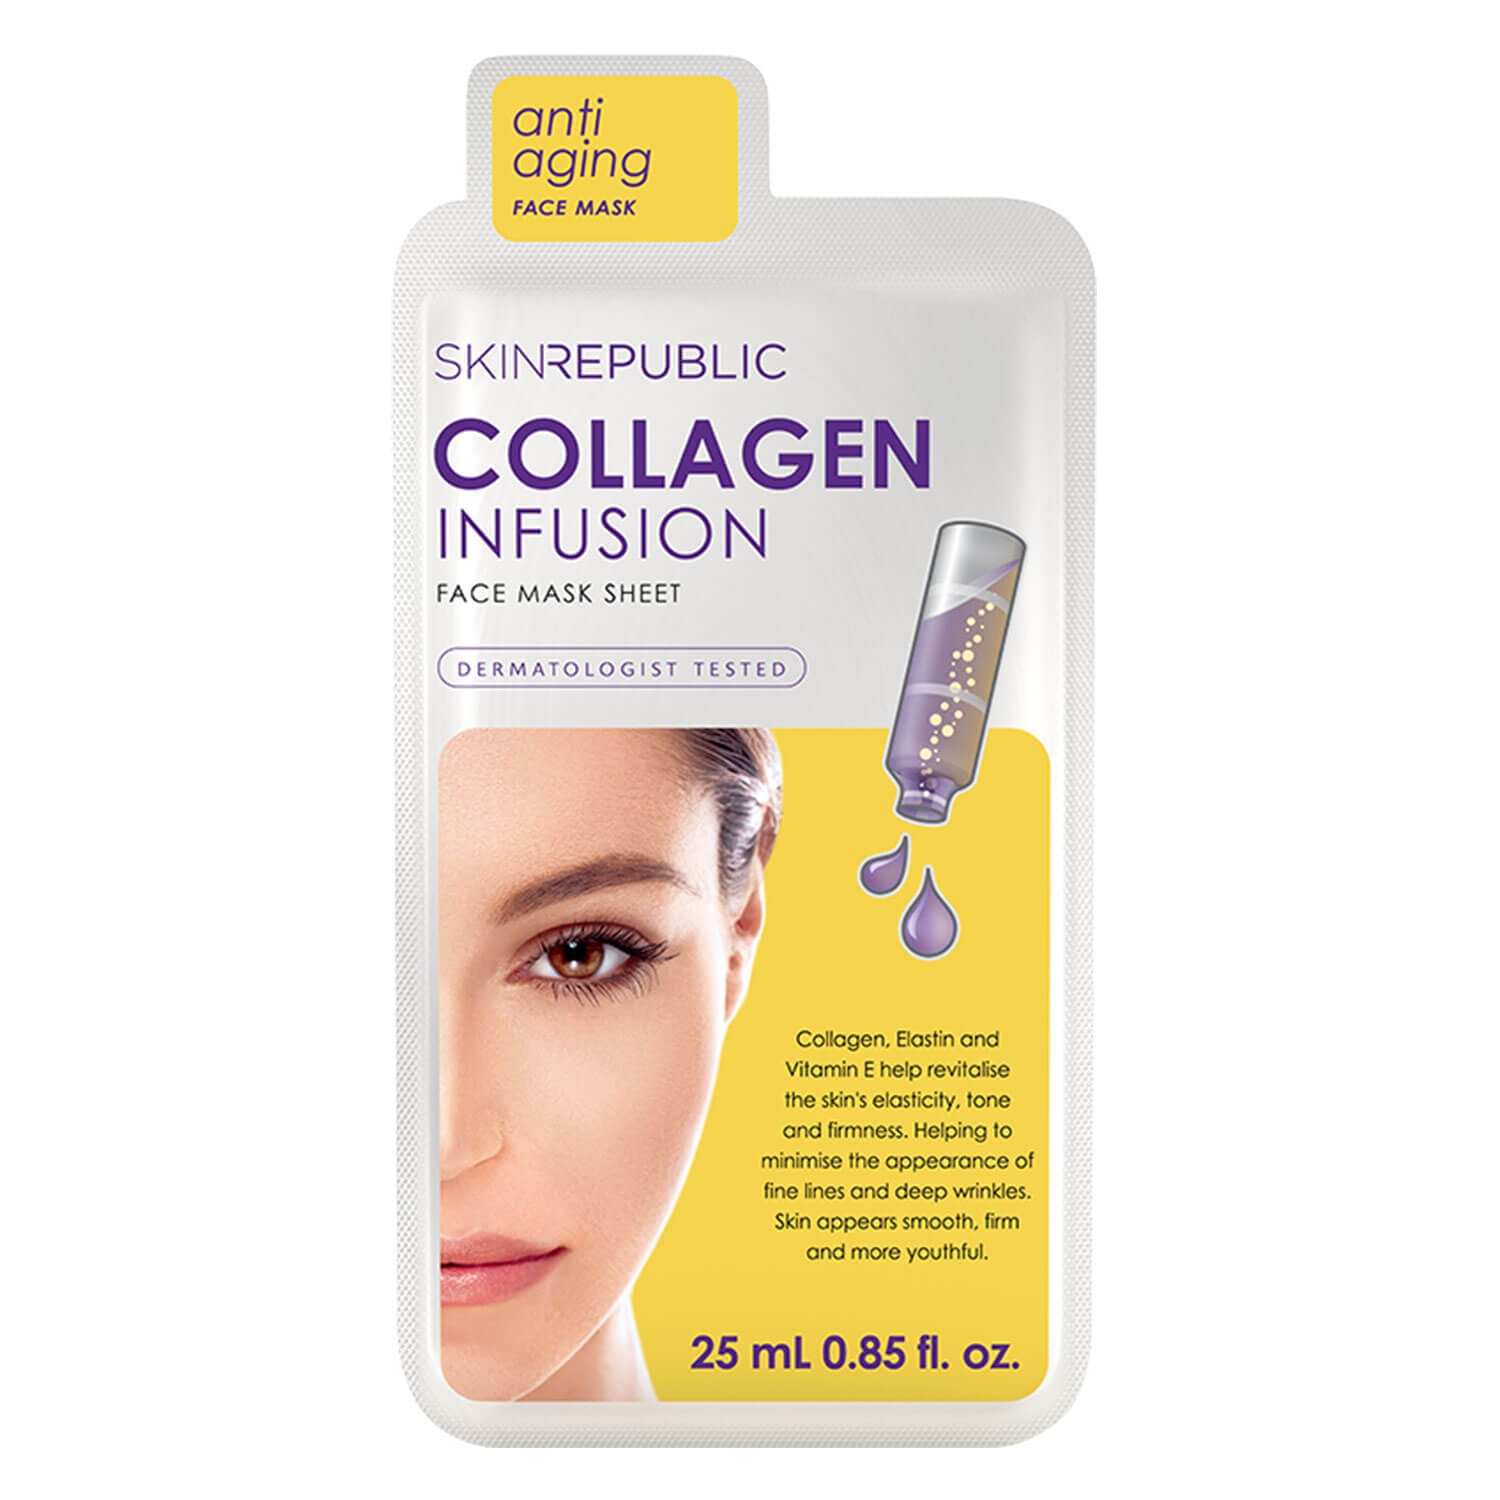 Produktbild von Skin Republic - Collagen Infusion Face Mask